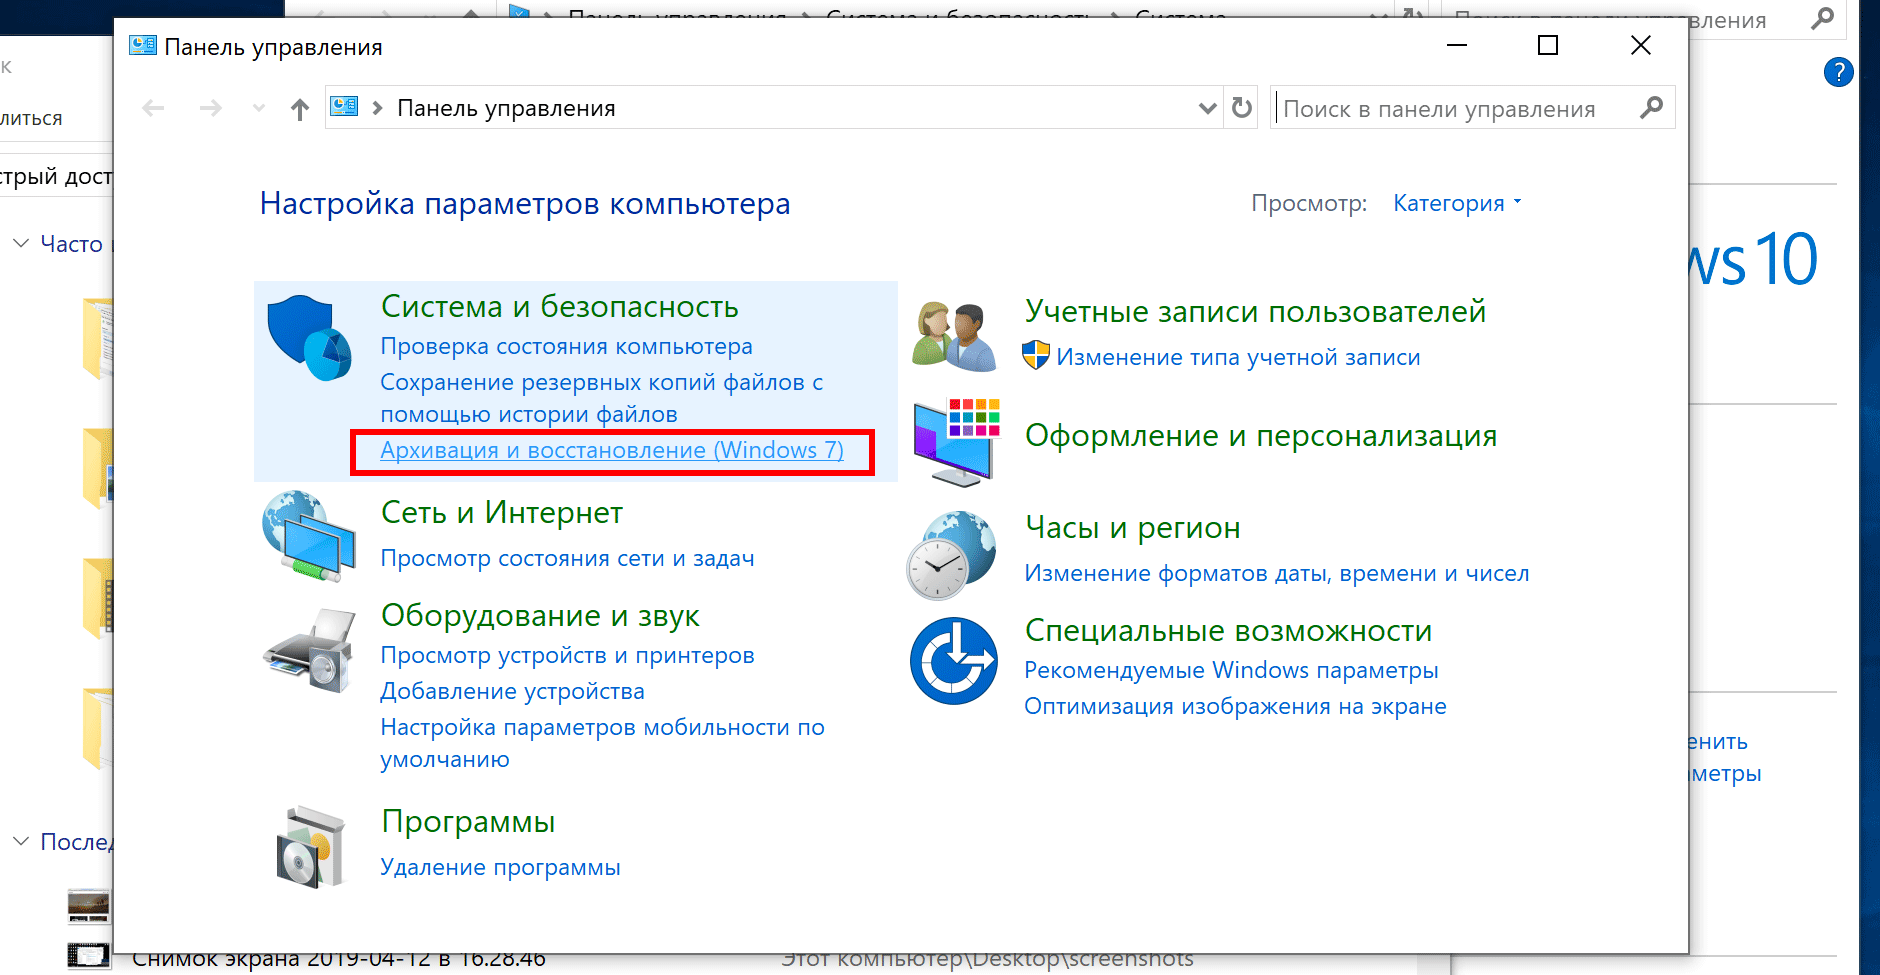 Архивация и восстановление (Windows 7)